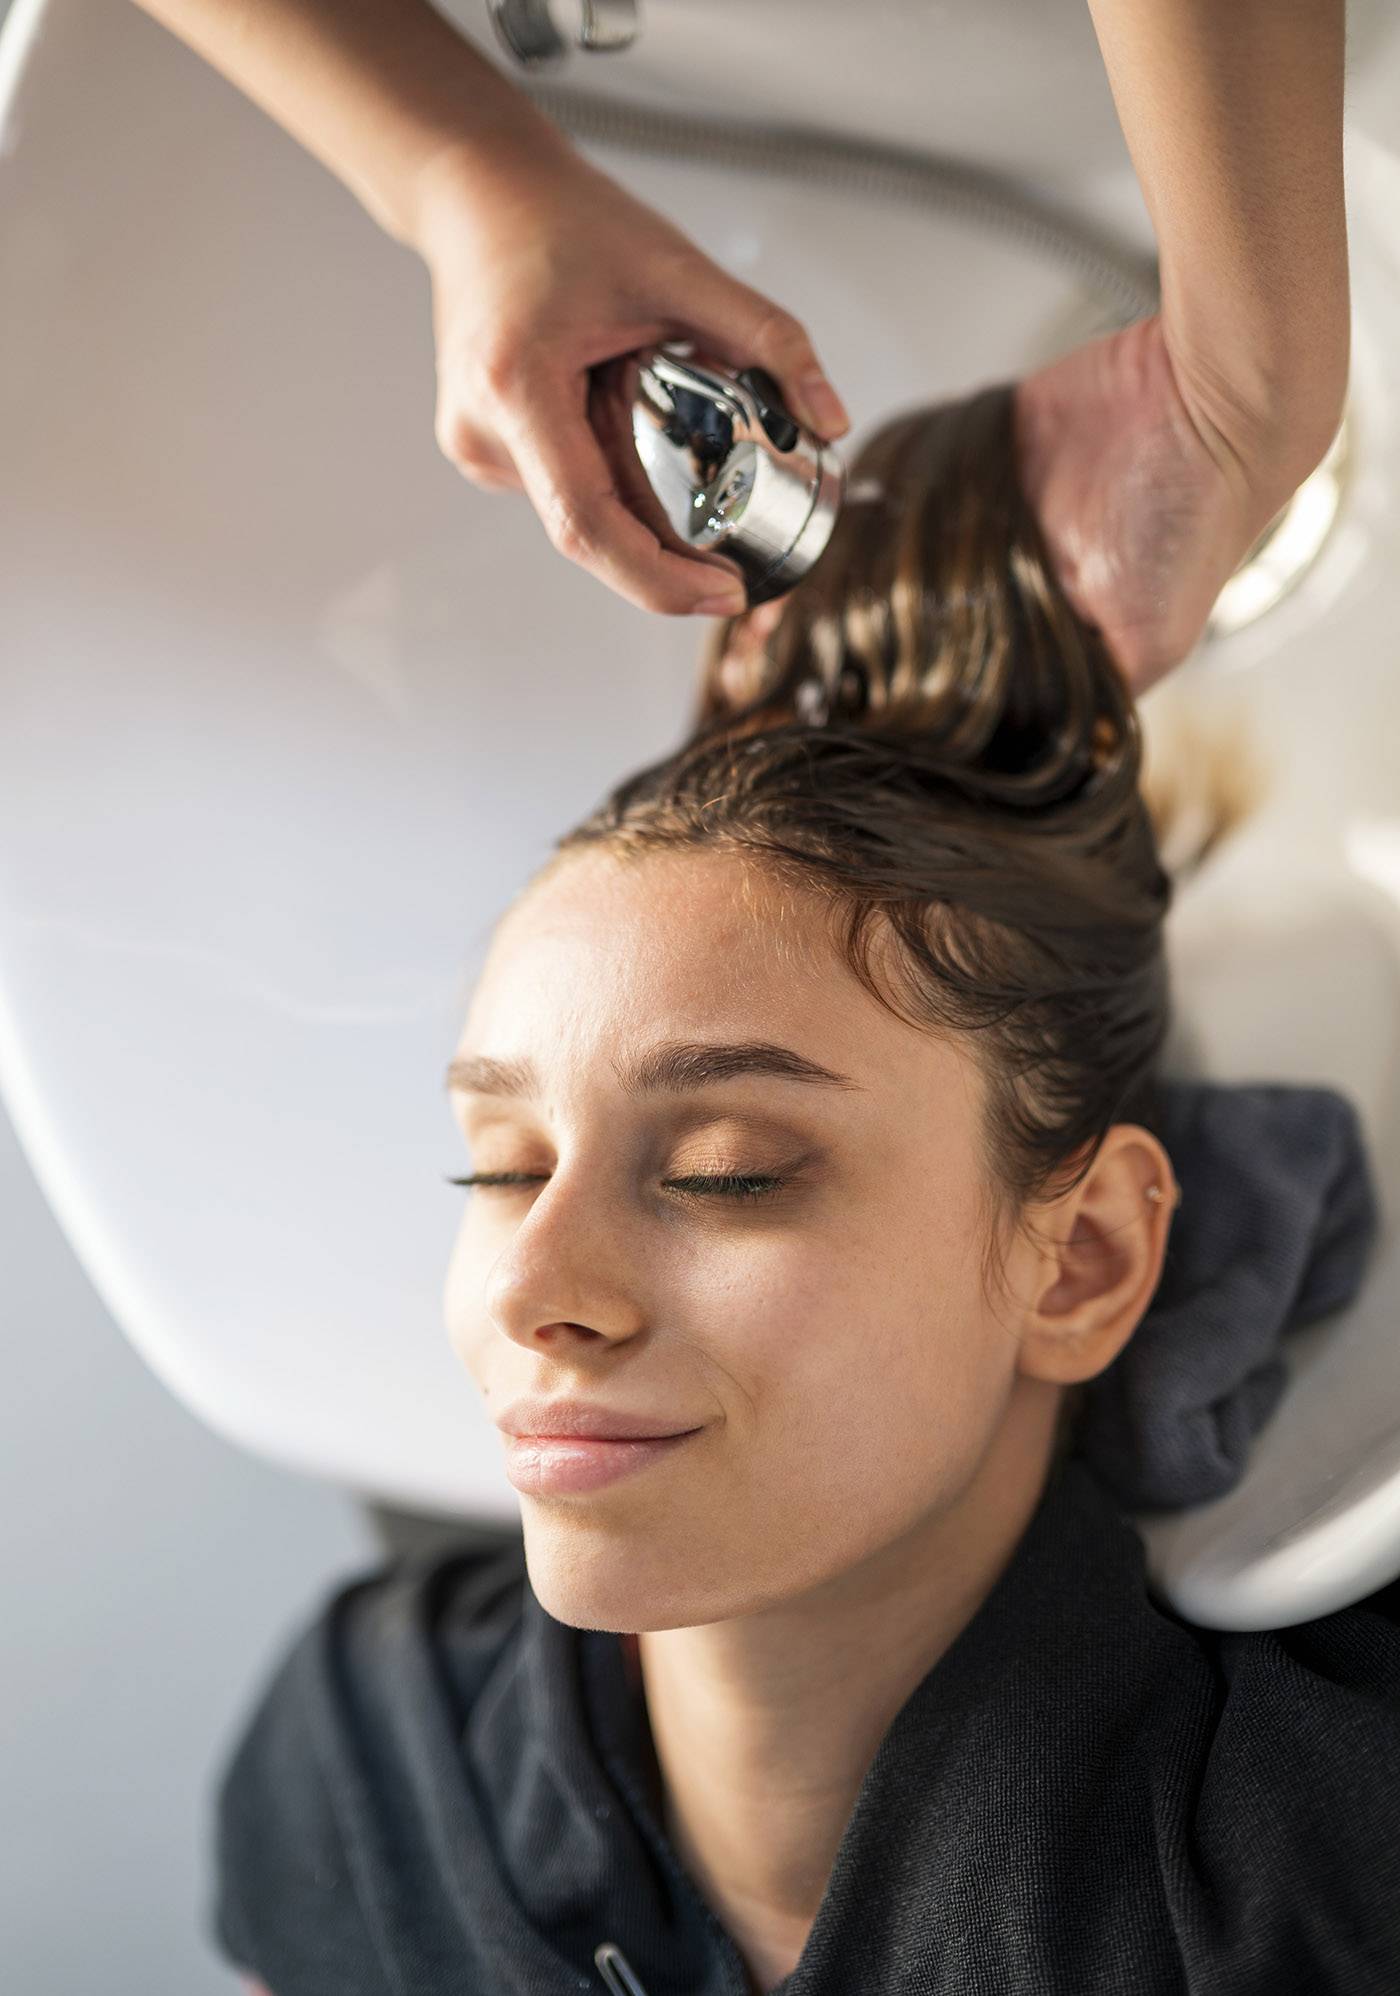 Fryzjerstwo przyszłości według L’Oréal: Z myślą o planecie (Fot. Getty Images)